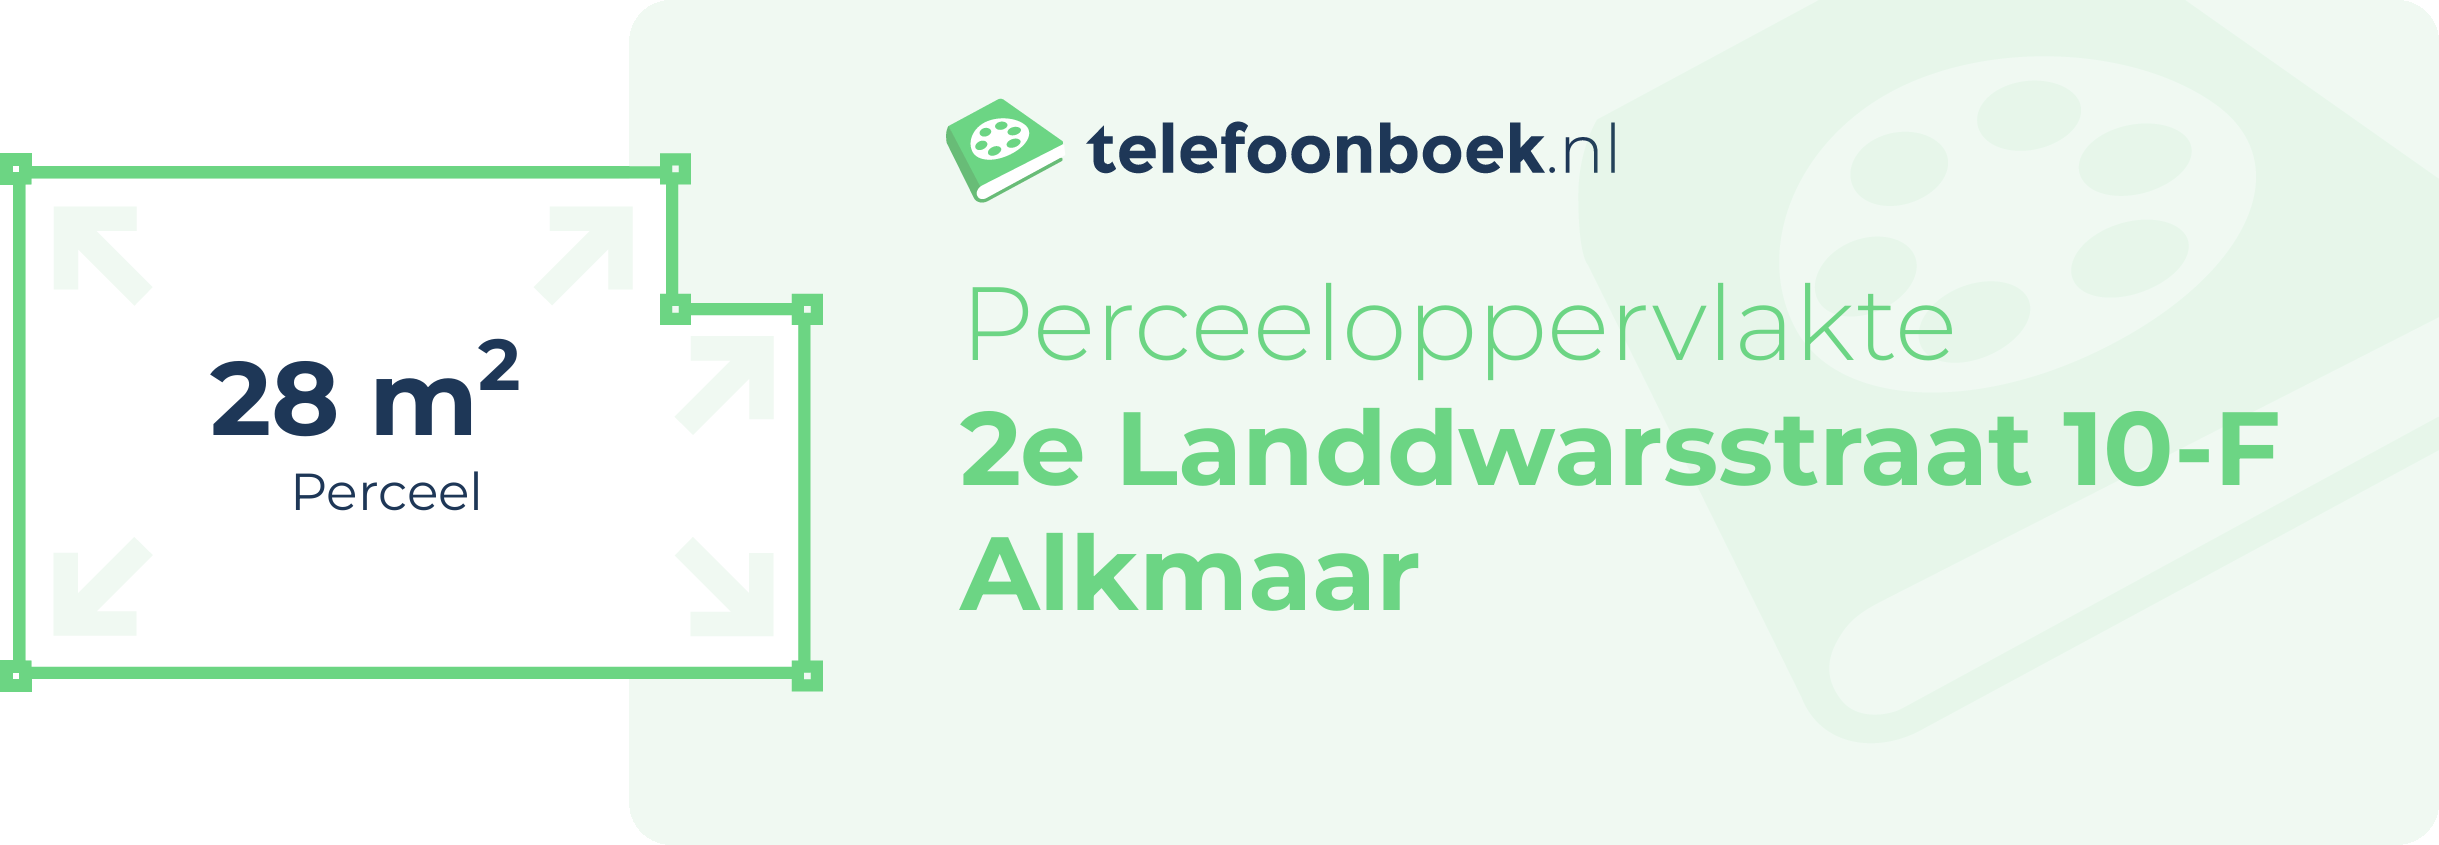 Perceeloppervlakte 2e Landdwarsstraat 10-F Alkmaar